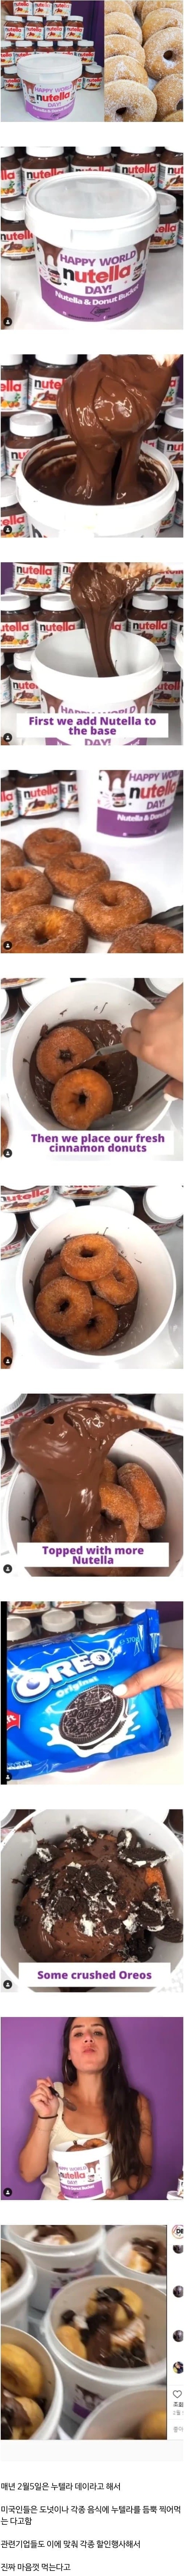 8 미국인들이 도넛 먹는 방법.jpg